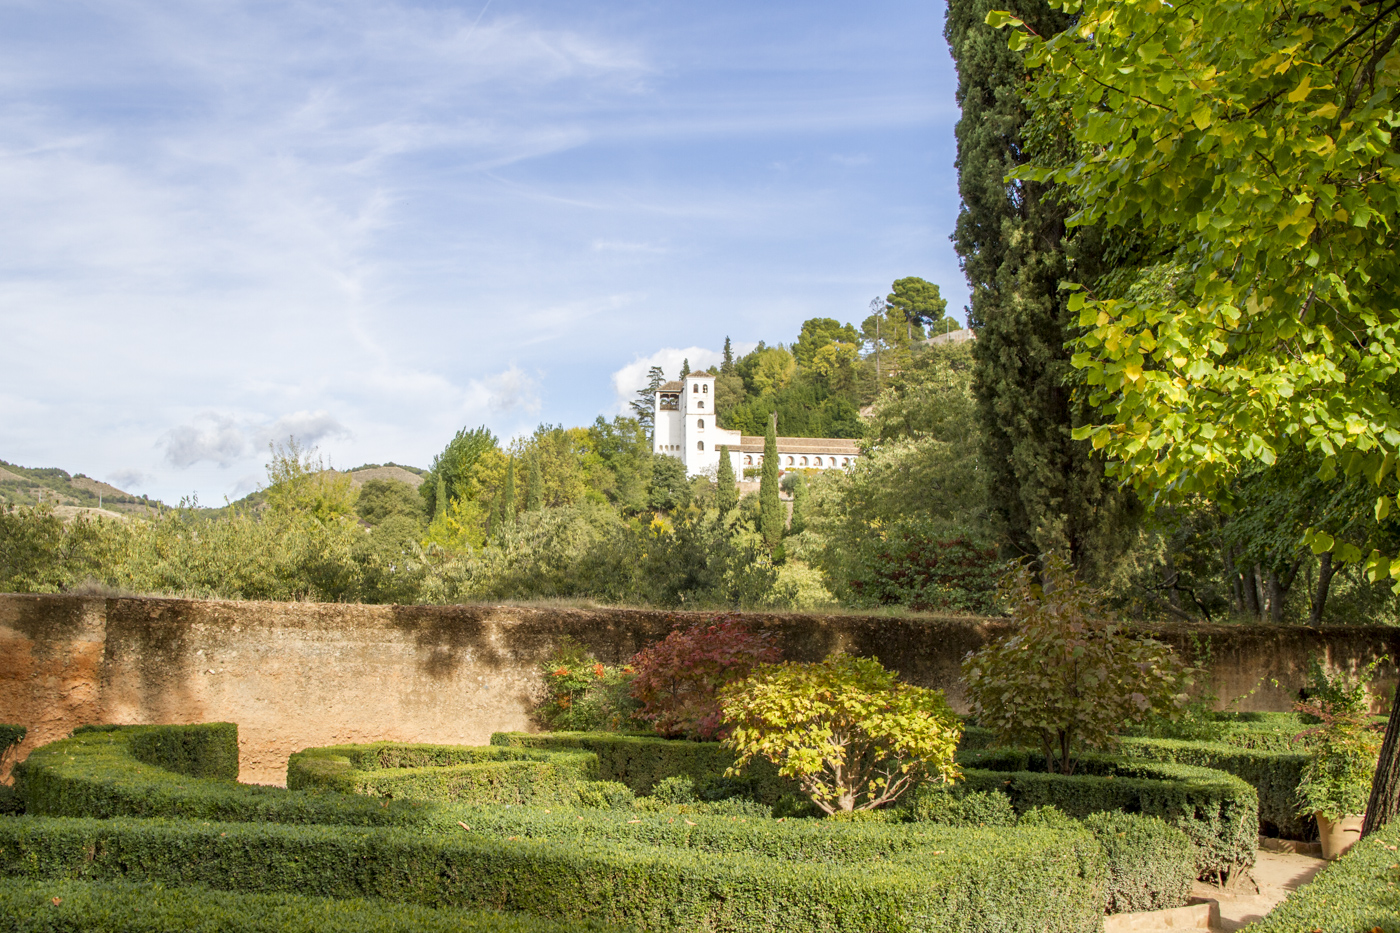 Dans les jardins de l'Alhambra